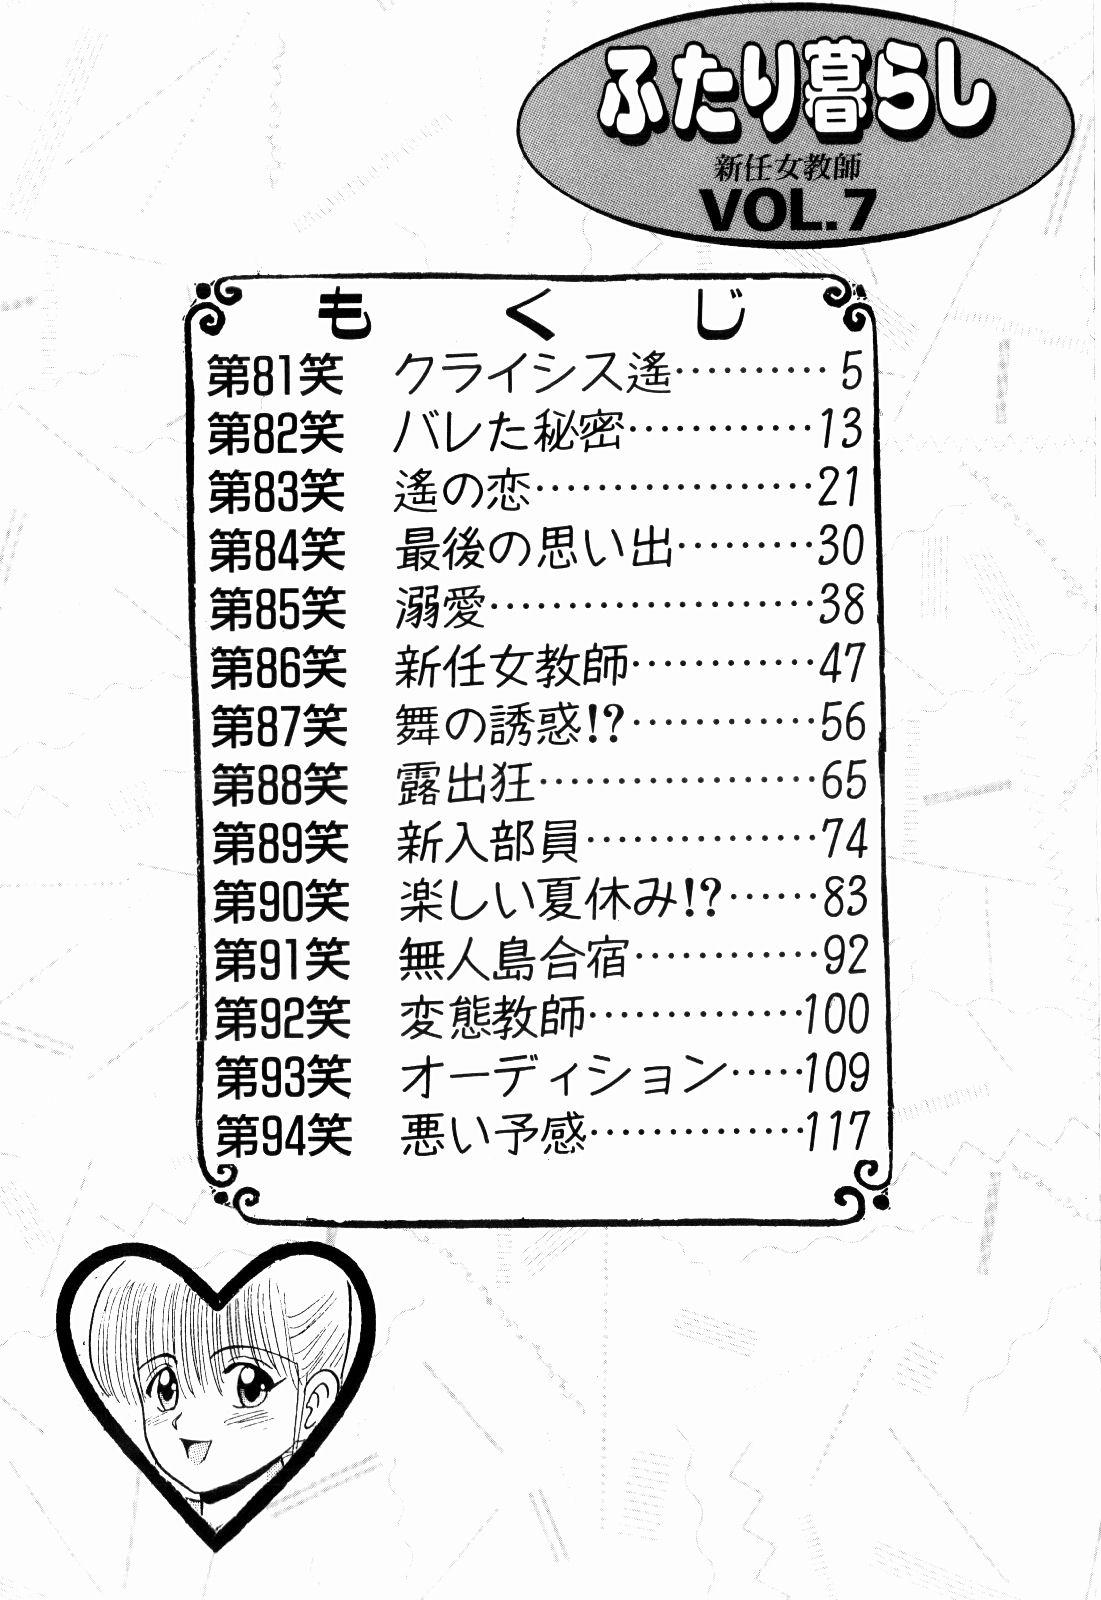 Pelada Kenjiro Kakimoto - Futari Kurashi 07 Cdmx - Page 4